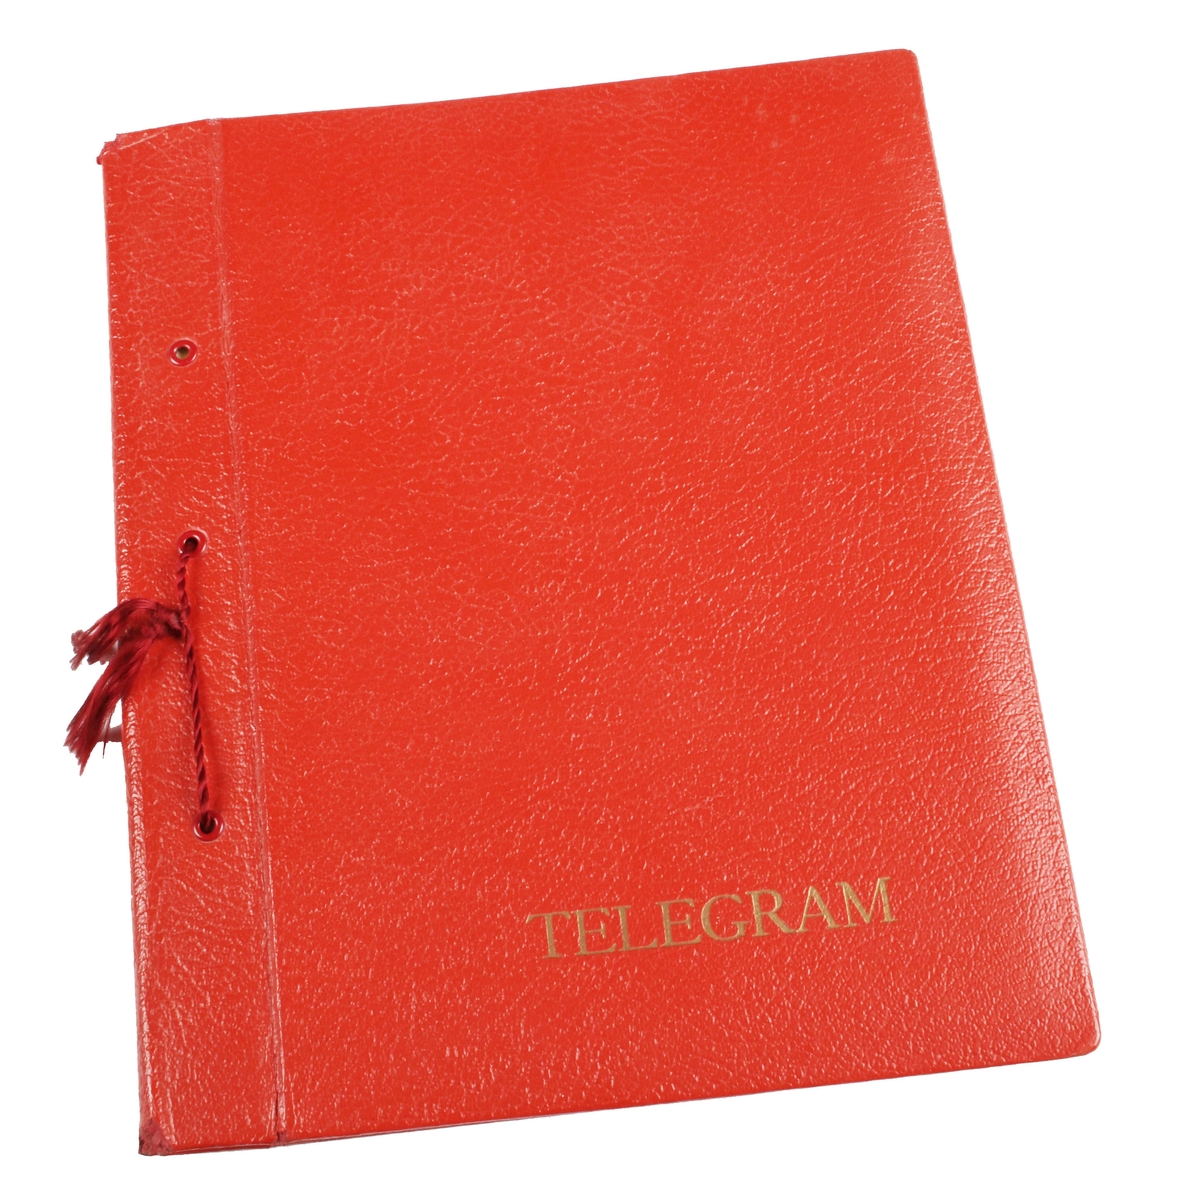 Telegrampärm. Pappband klätt i rött konstläder. Präglat "TELEGRAM" i guldtryck längst ned. Innehåller 19 telegram. De flesta maskinskrivna med olika dekor, från åren 1945-1947. Bundna till pärmen med rött snöre. I gott skick.